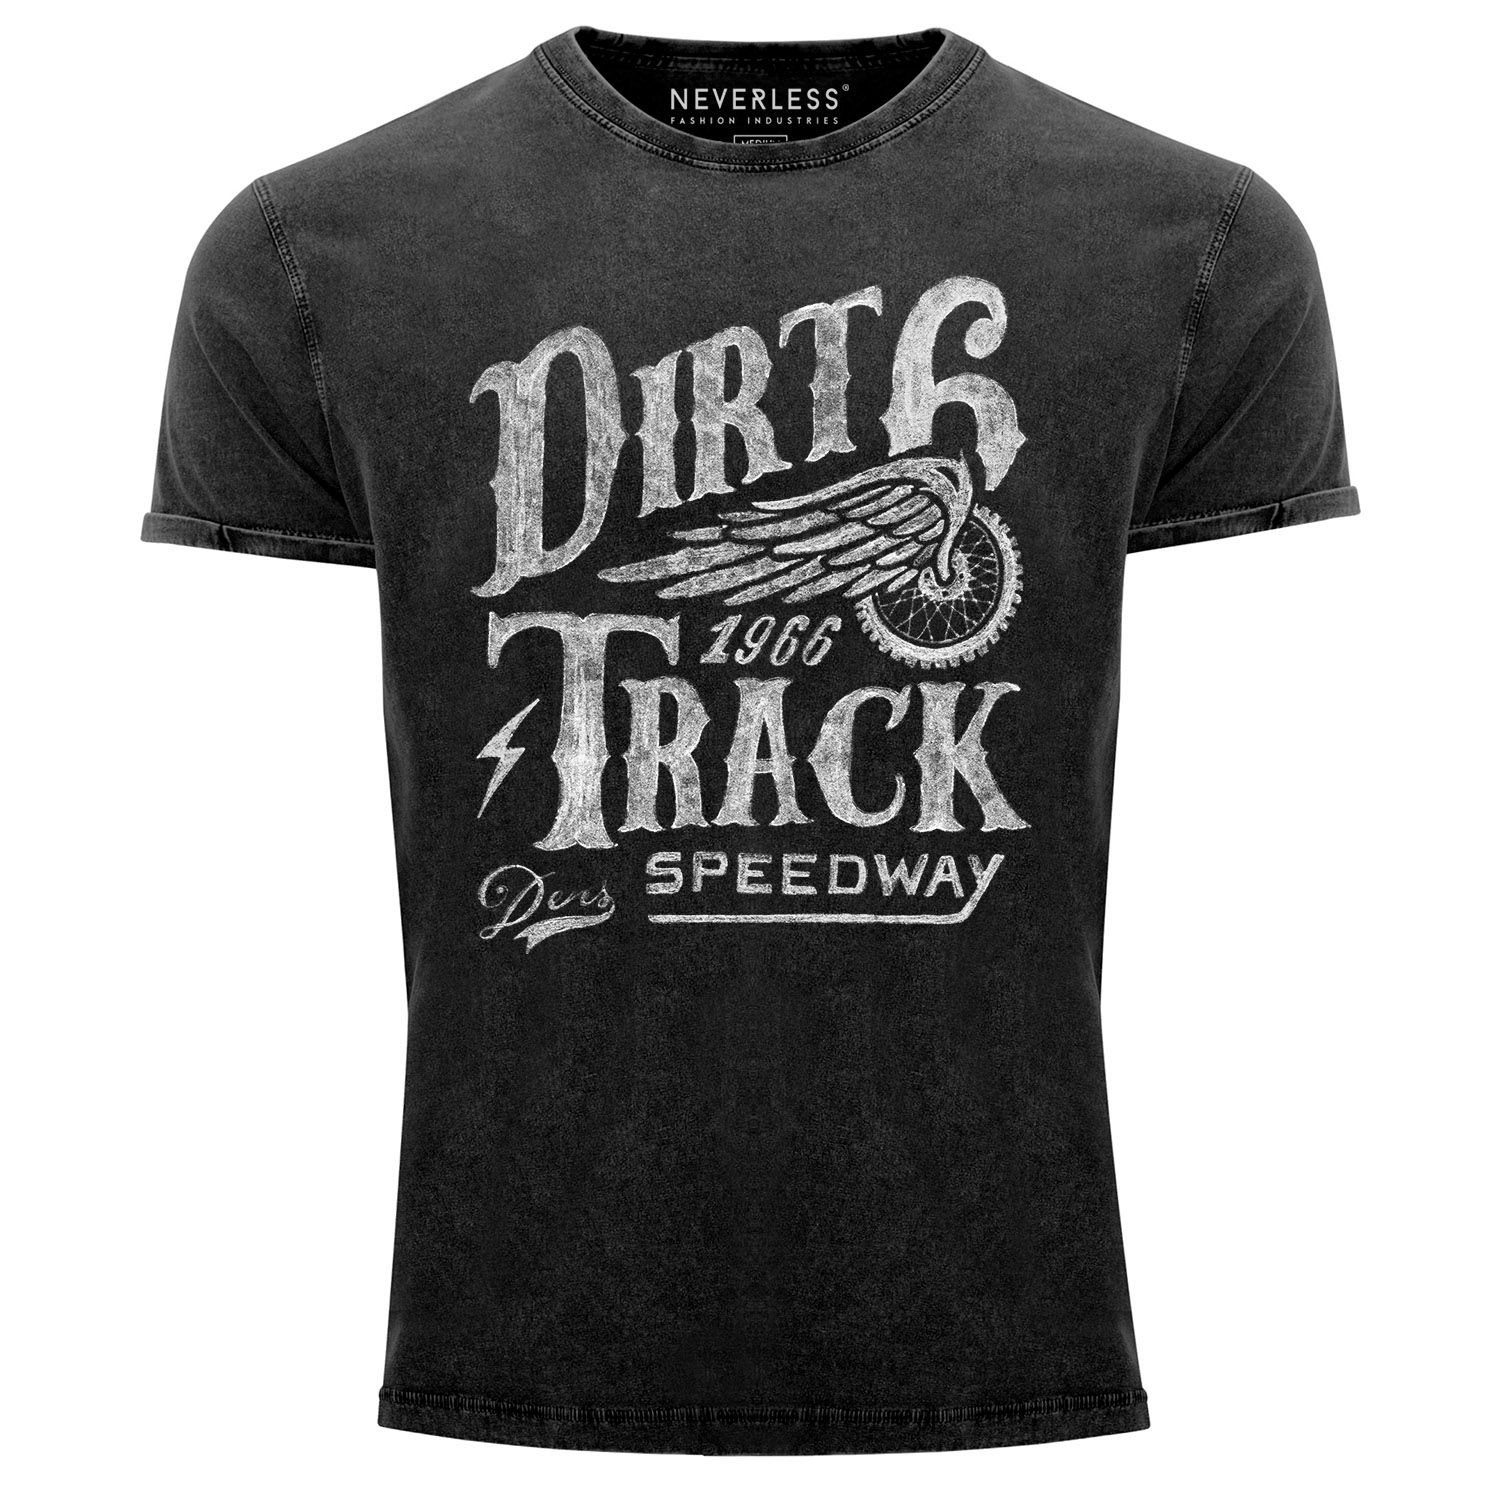 Track Herren Dirt Shirt Look Neverless® Used Racing Angesagtes Slim Fit Cooles Vintage Aufdruck T-Shirt schwarz Neverless mit Print-Shirt Print